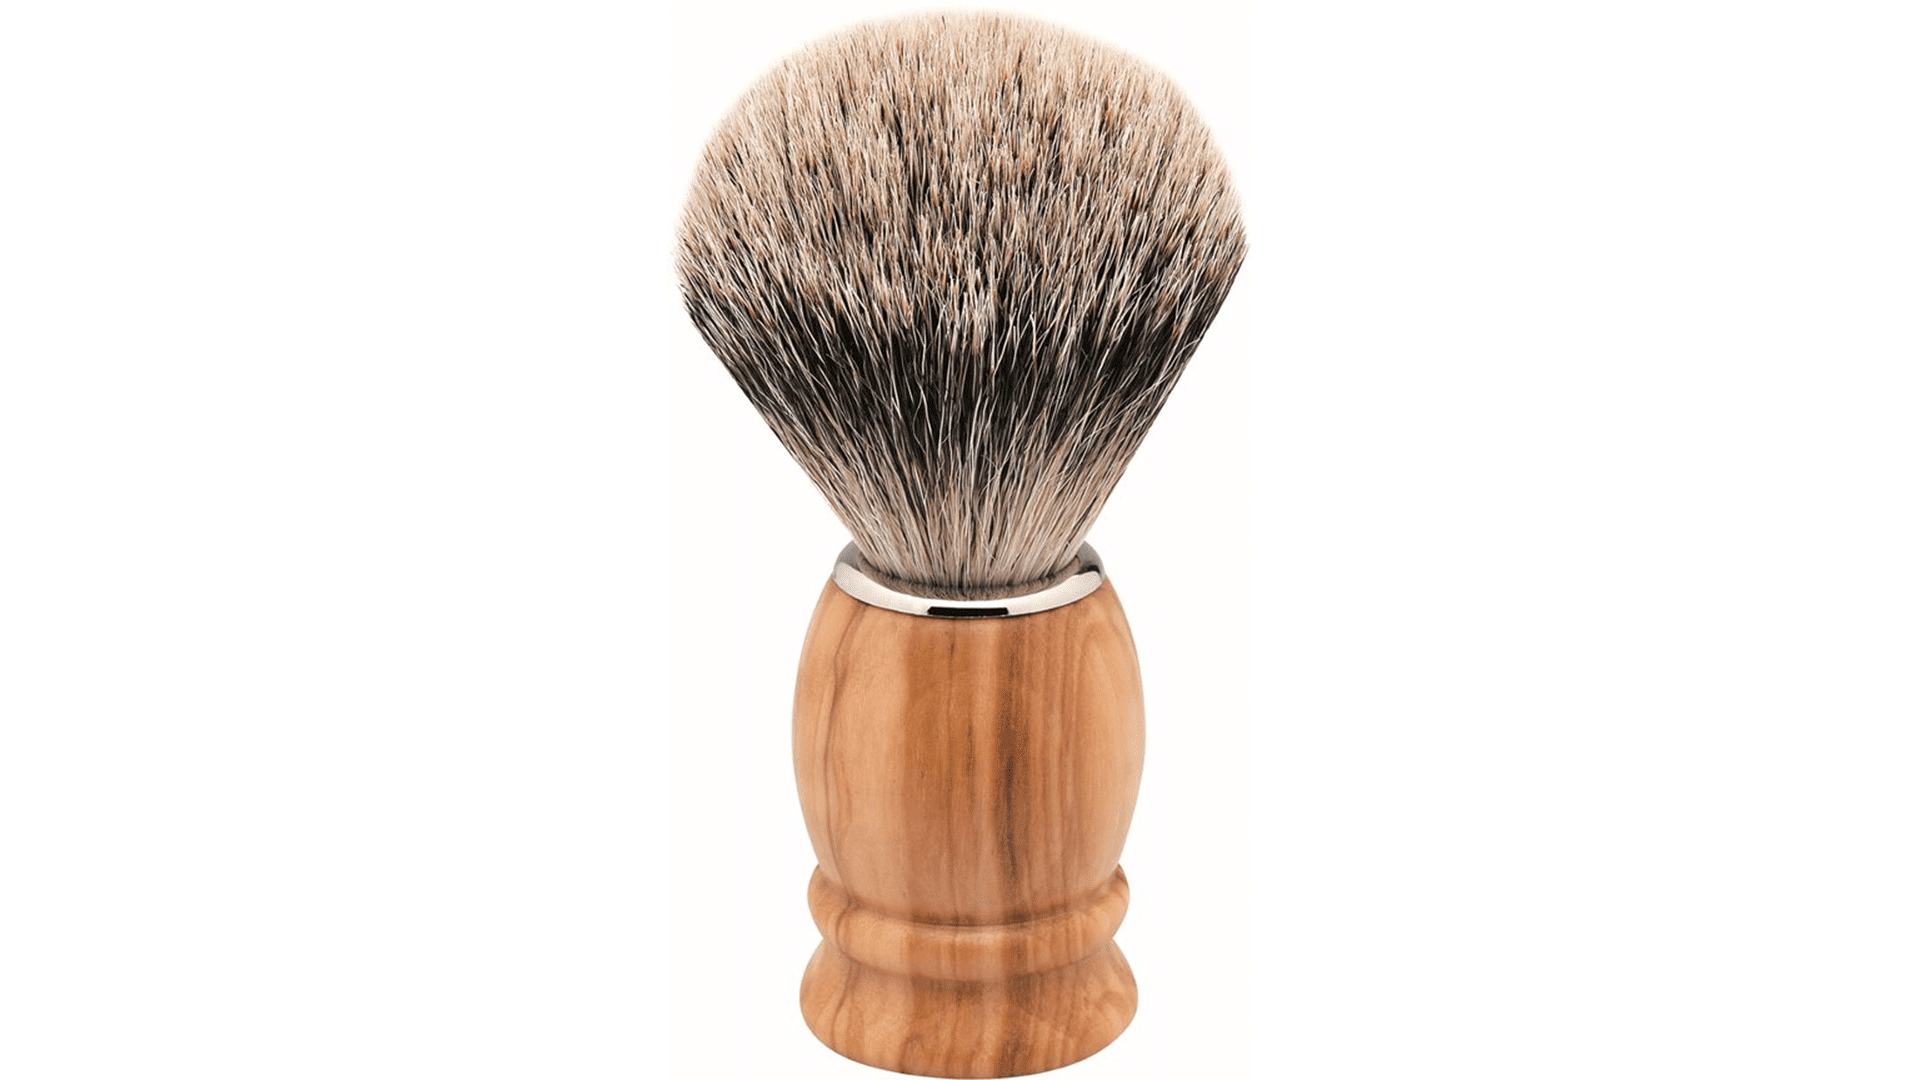 Erbe shaving | Rottner L Knife hair badger olive sales brush wood